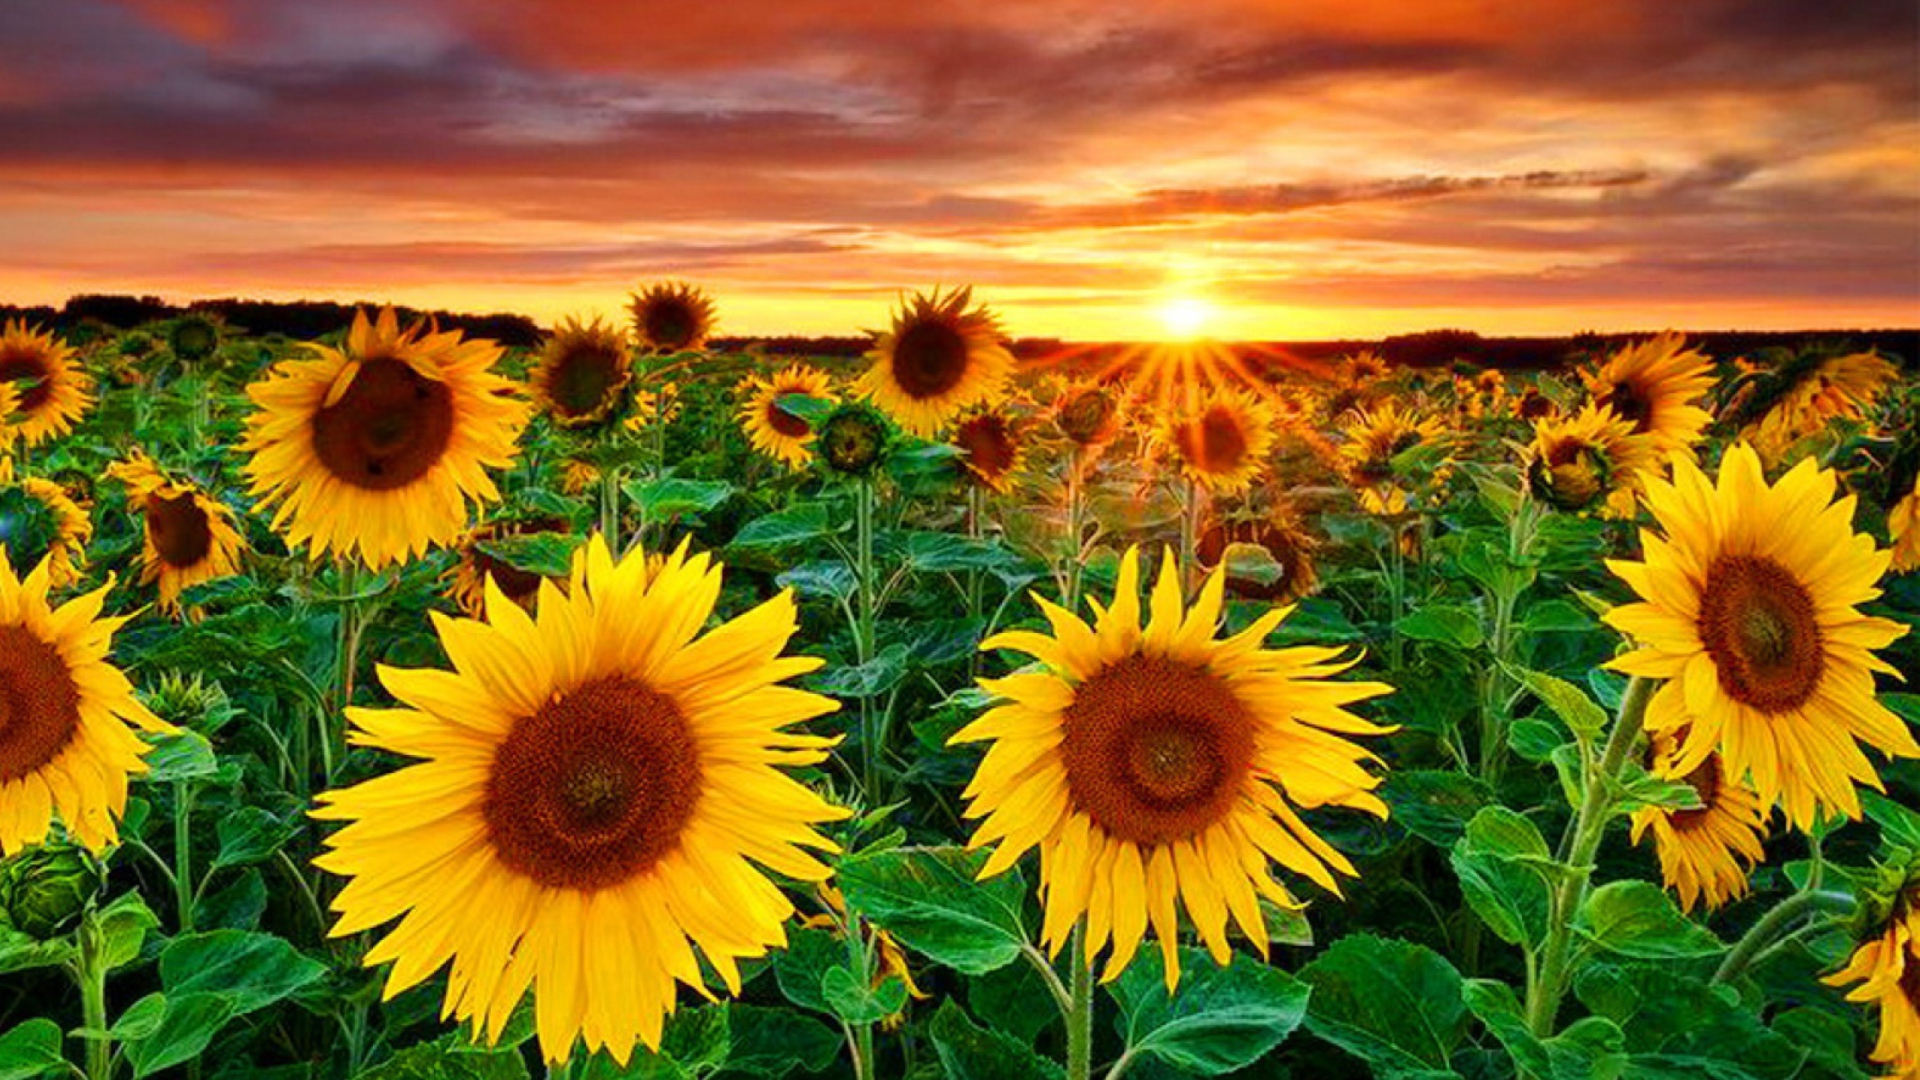 Beautiful Sunflower Field At Sunset wallpaper 1920x1080